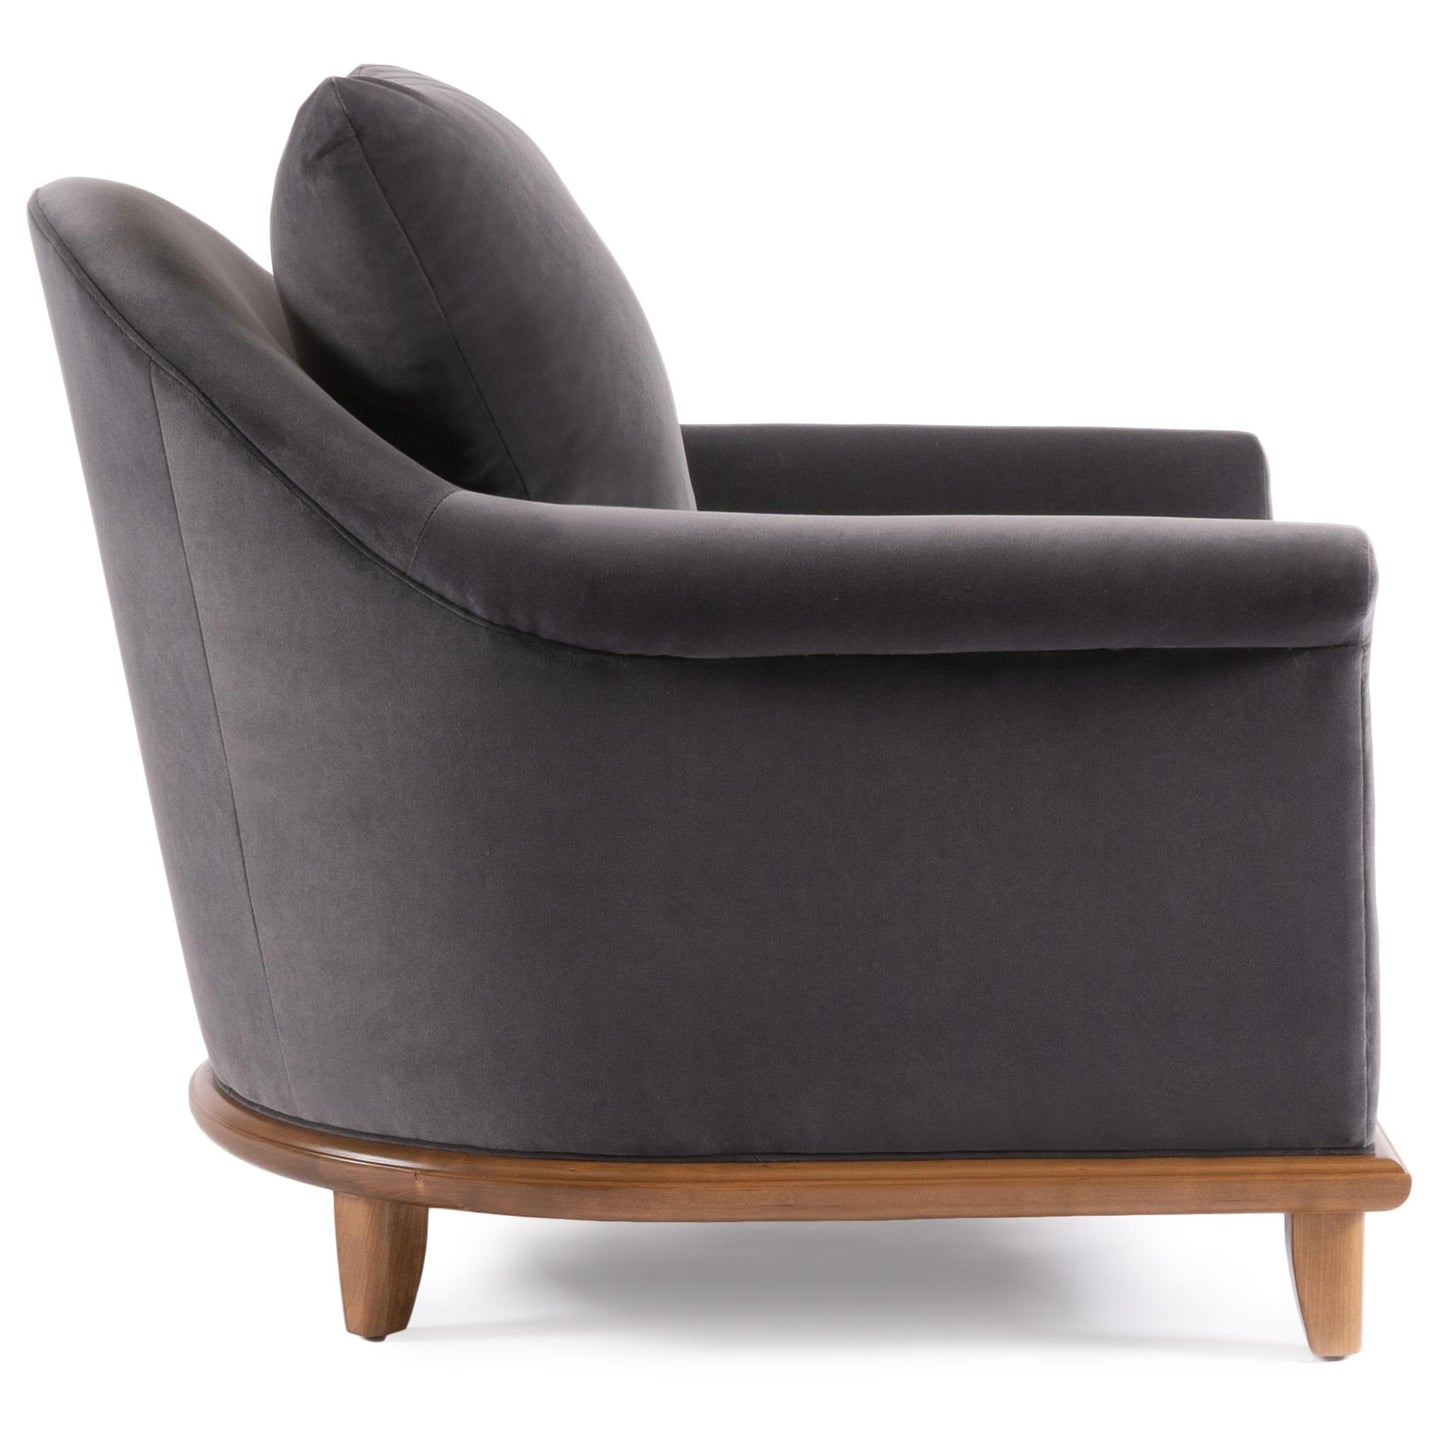 Martine Chair - Stickley Furniture | Mattress